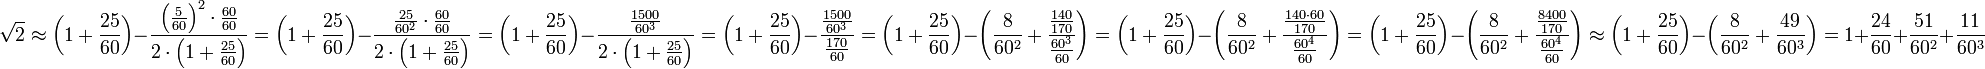 \sqrt{2}\approx\left(1+\frac{25}{60}\right)-\frac{\left(\frac{5}{60}\right)^2\sdot\frac{60}{60}}{2\sdot\left(1+\frac{25}{60}\right)}=\left(1+\frac{25}{60}\right)-\frac{\frac{25}{60^2}\sdot\frac{60}{60}}{2\sdot\left(1+\frac{25}{60}\right)}=\left(1+\frac{25}{60}\right)-\frac{\frac{1500}{60^3}}{2\sdot\left(1+\frac{25}{60}\right)}=\left(1+\frac{25}{60}\right)-\frac{\frac{1500}{60^3}}{\frac{170}{60}}=\left(1+\frac{25}{60}\right)-\left(\frac{8}{60^2}+\frac{\frac{140}{170}}{\frac{60^3}{60}}\right)=\left(1+\frac{25}{60}\right)-\left(\frac{8}{60^2}+\frac{\frac{140\sdot60}{170}}{\frac{60^4}{60}}\right)=\left(1+\frac{25}{60}\right)-\left(\frac{8}{60^2}+\frac{\frac{8400}{170}}{\frac{60^4}{60}}\right)\approx\left(1+\frac{25}{60}\right)-\left(\frac{8}{60^2}+\frac{49}{60^3}\right)=1+\frac{24}{60}+\frac{51}{60^2}+\frac{11}{60^3}